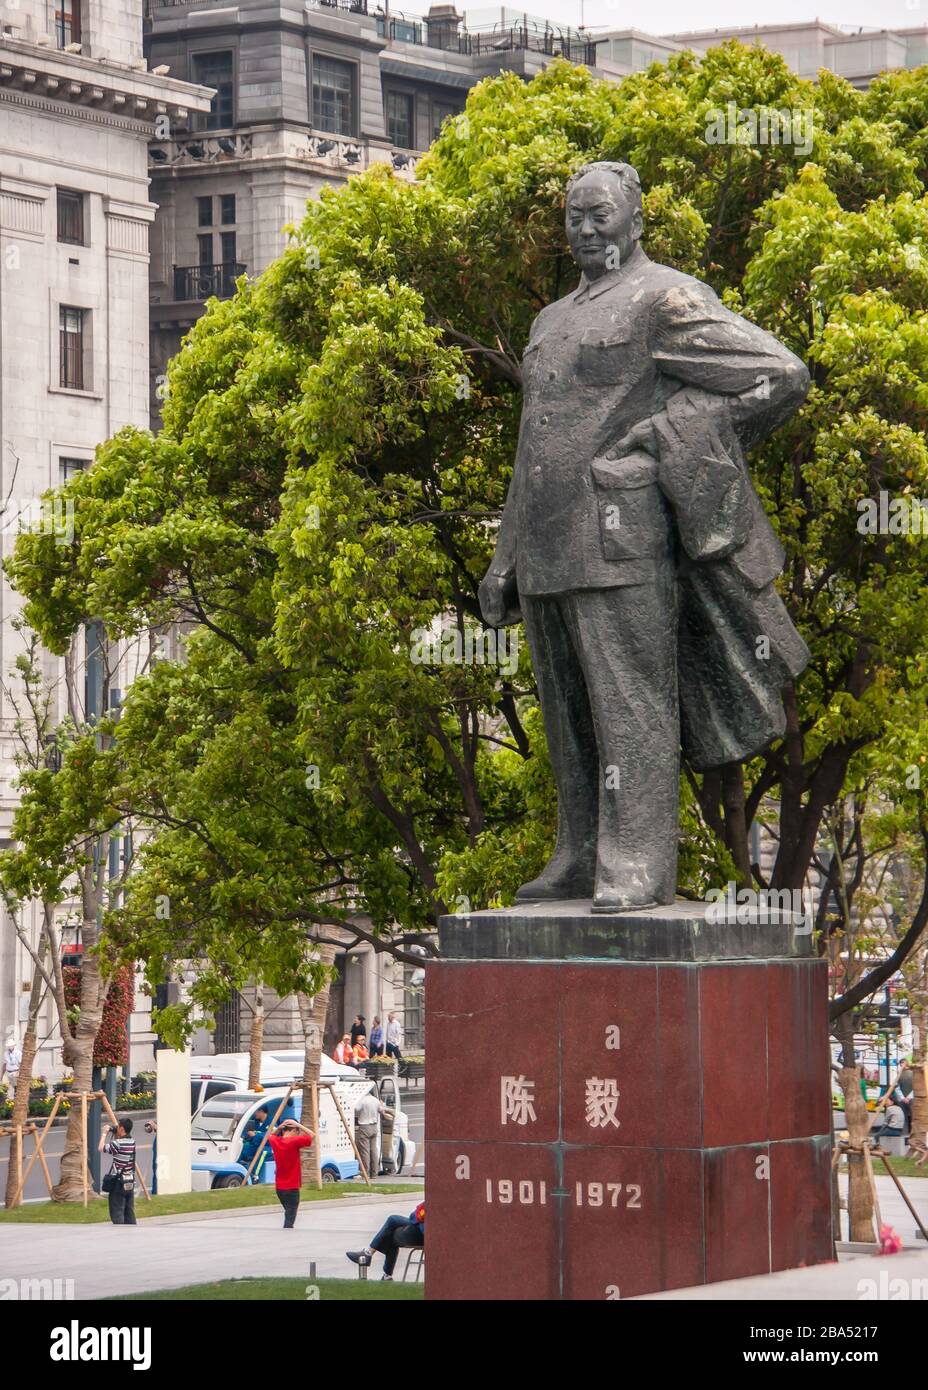 Shanghai, Cina - 4 maggio 2010: Massiccia statua grigia sul piedistallo rosso di Chen Yi, primo sindaco, un uomo, con fogliame verde alle sue spalle. Parti dell'edificio f Foto Stock